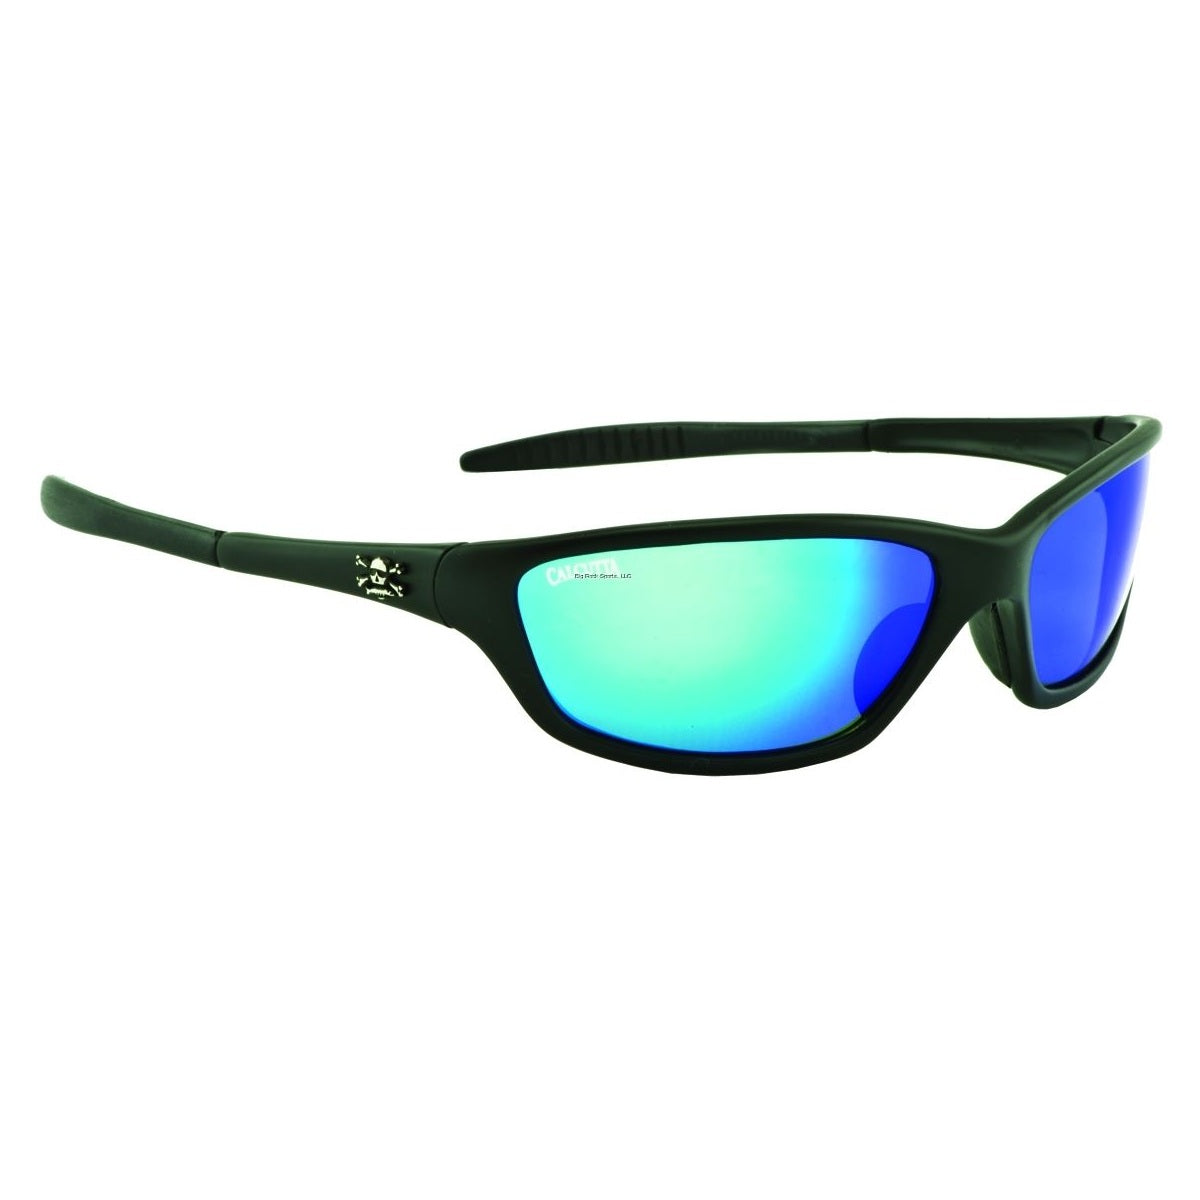 Calcutta Tellico Polarized Sunglasses Matte Black Frame/Blue Mirror Lens